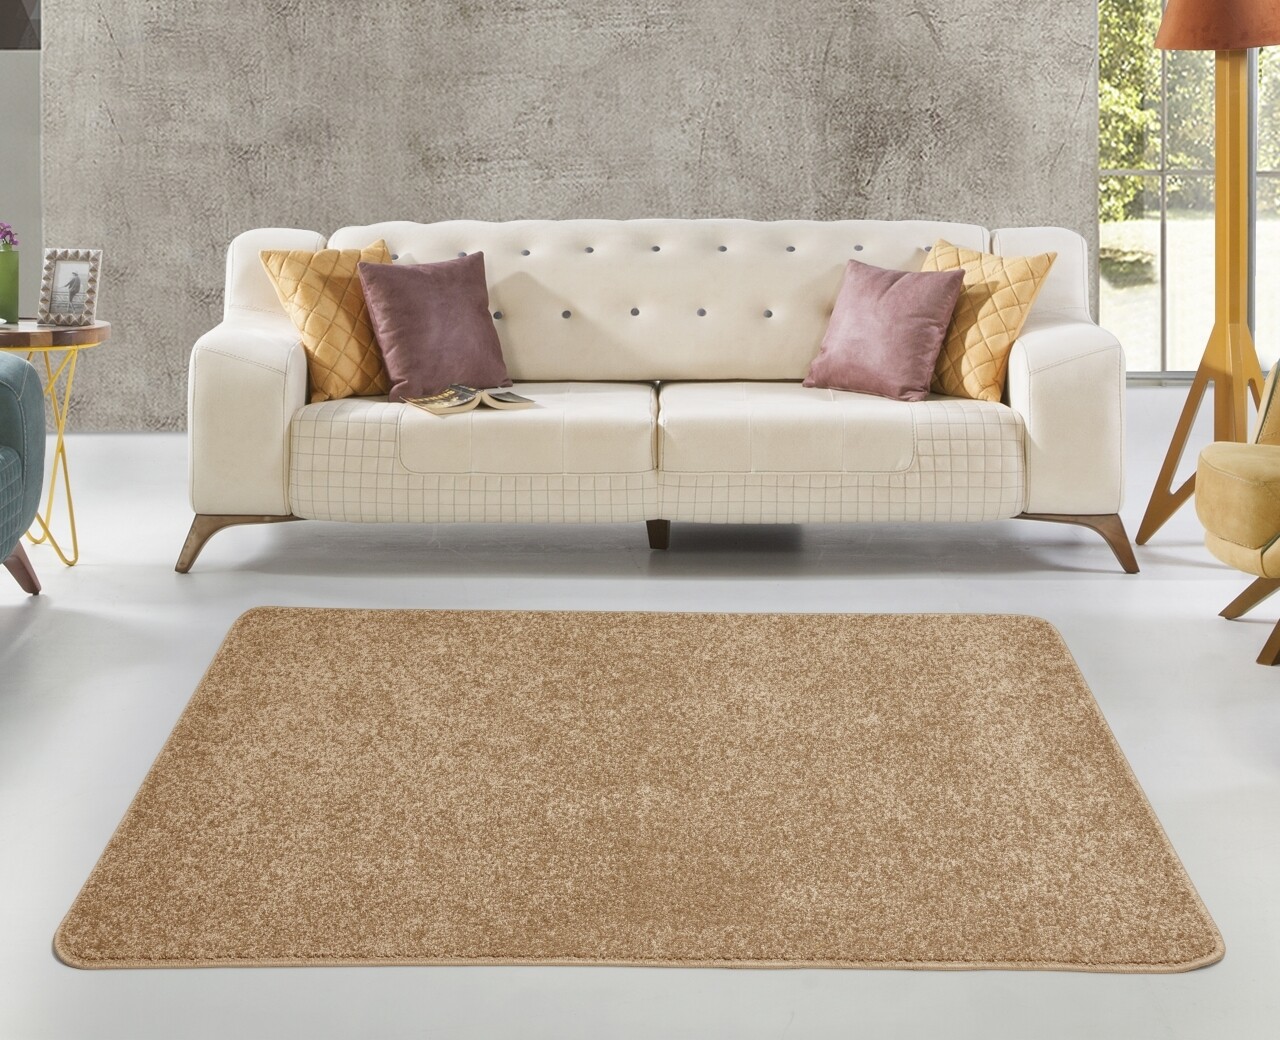 Hamilton Camel szőnyeg, Bedora, 120 x 160 cm, 100% polipropilén, krém